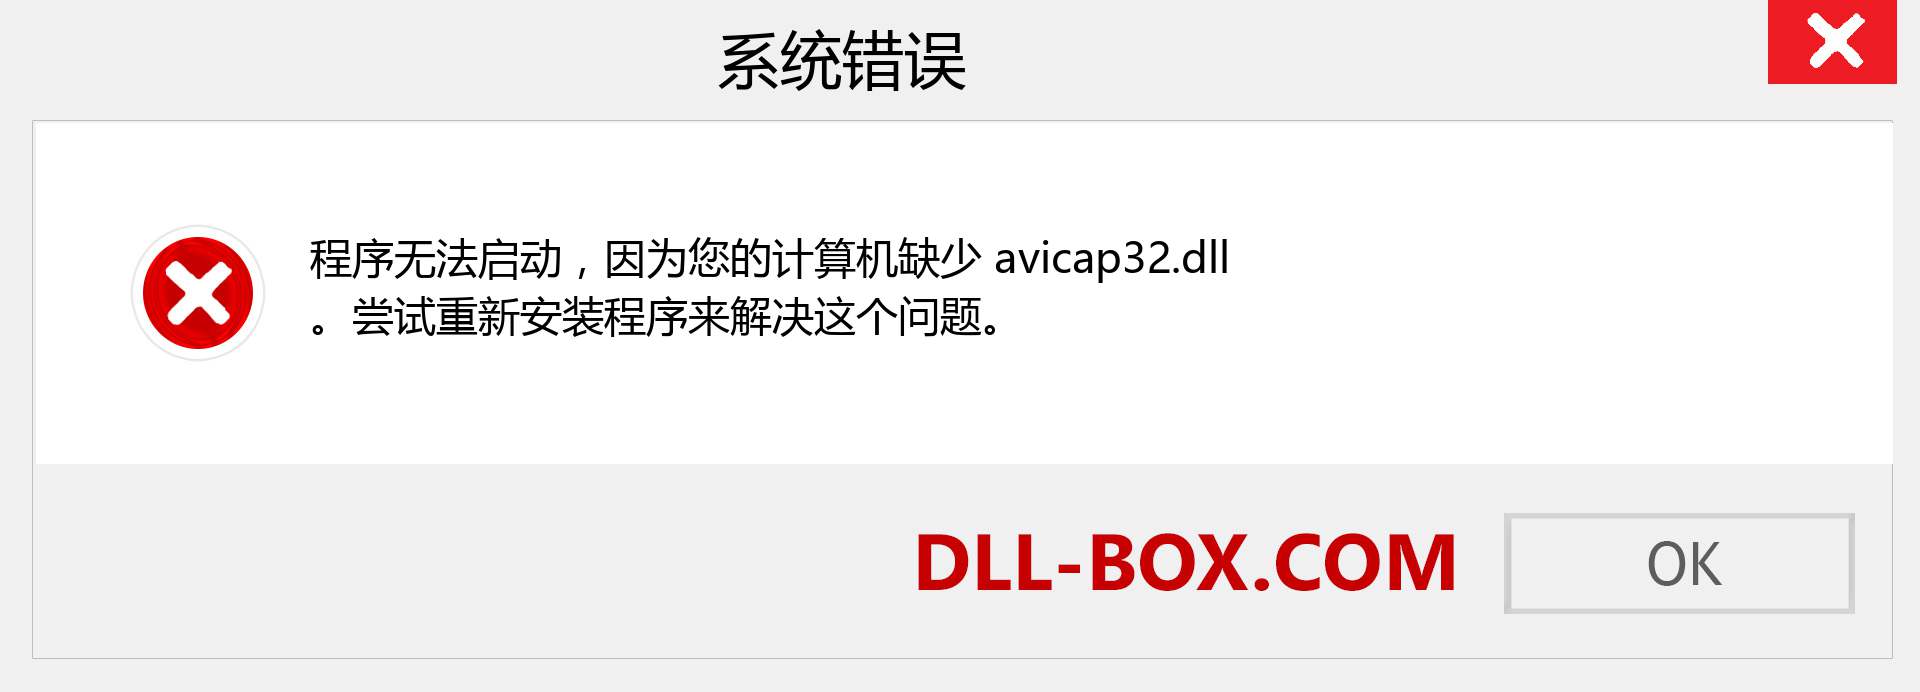 avicap32.dll 文件丢失？。 适用于 Windows 7、8、10 的下载 - 修复 Windows、照片、图像上的 avicap32 dll 丢失错误